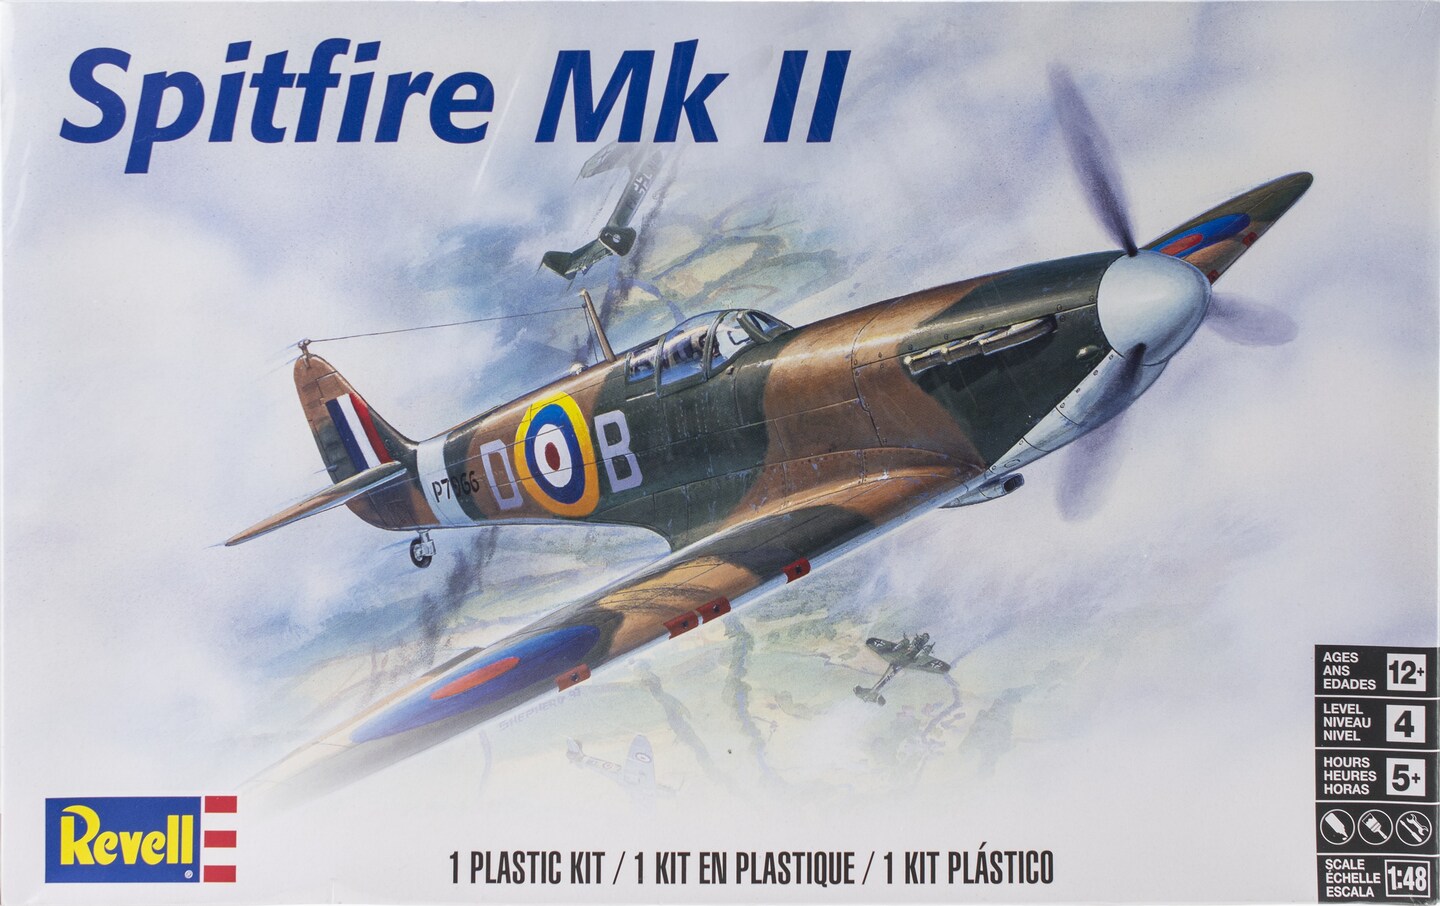 Revell Plastic Model Kit-Spitfire Mkii 1:48